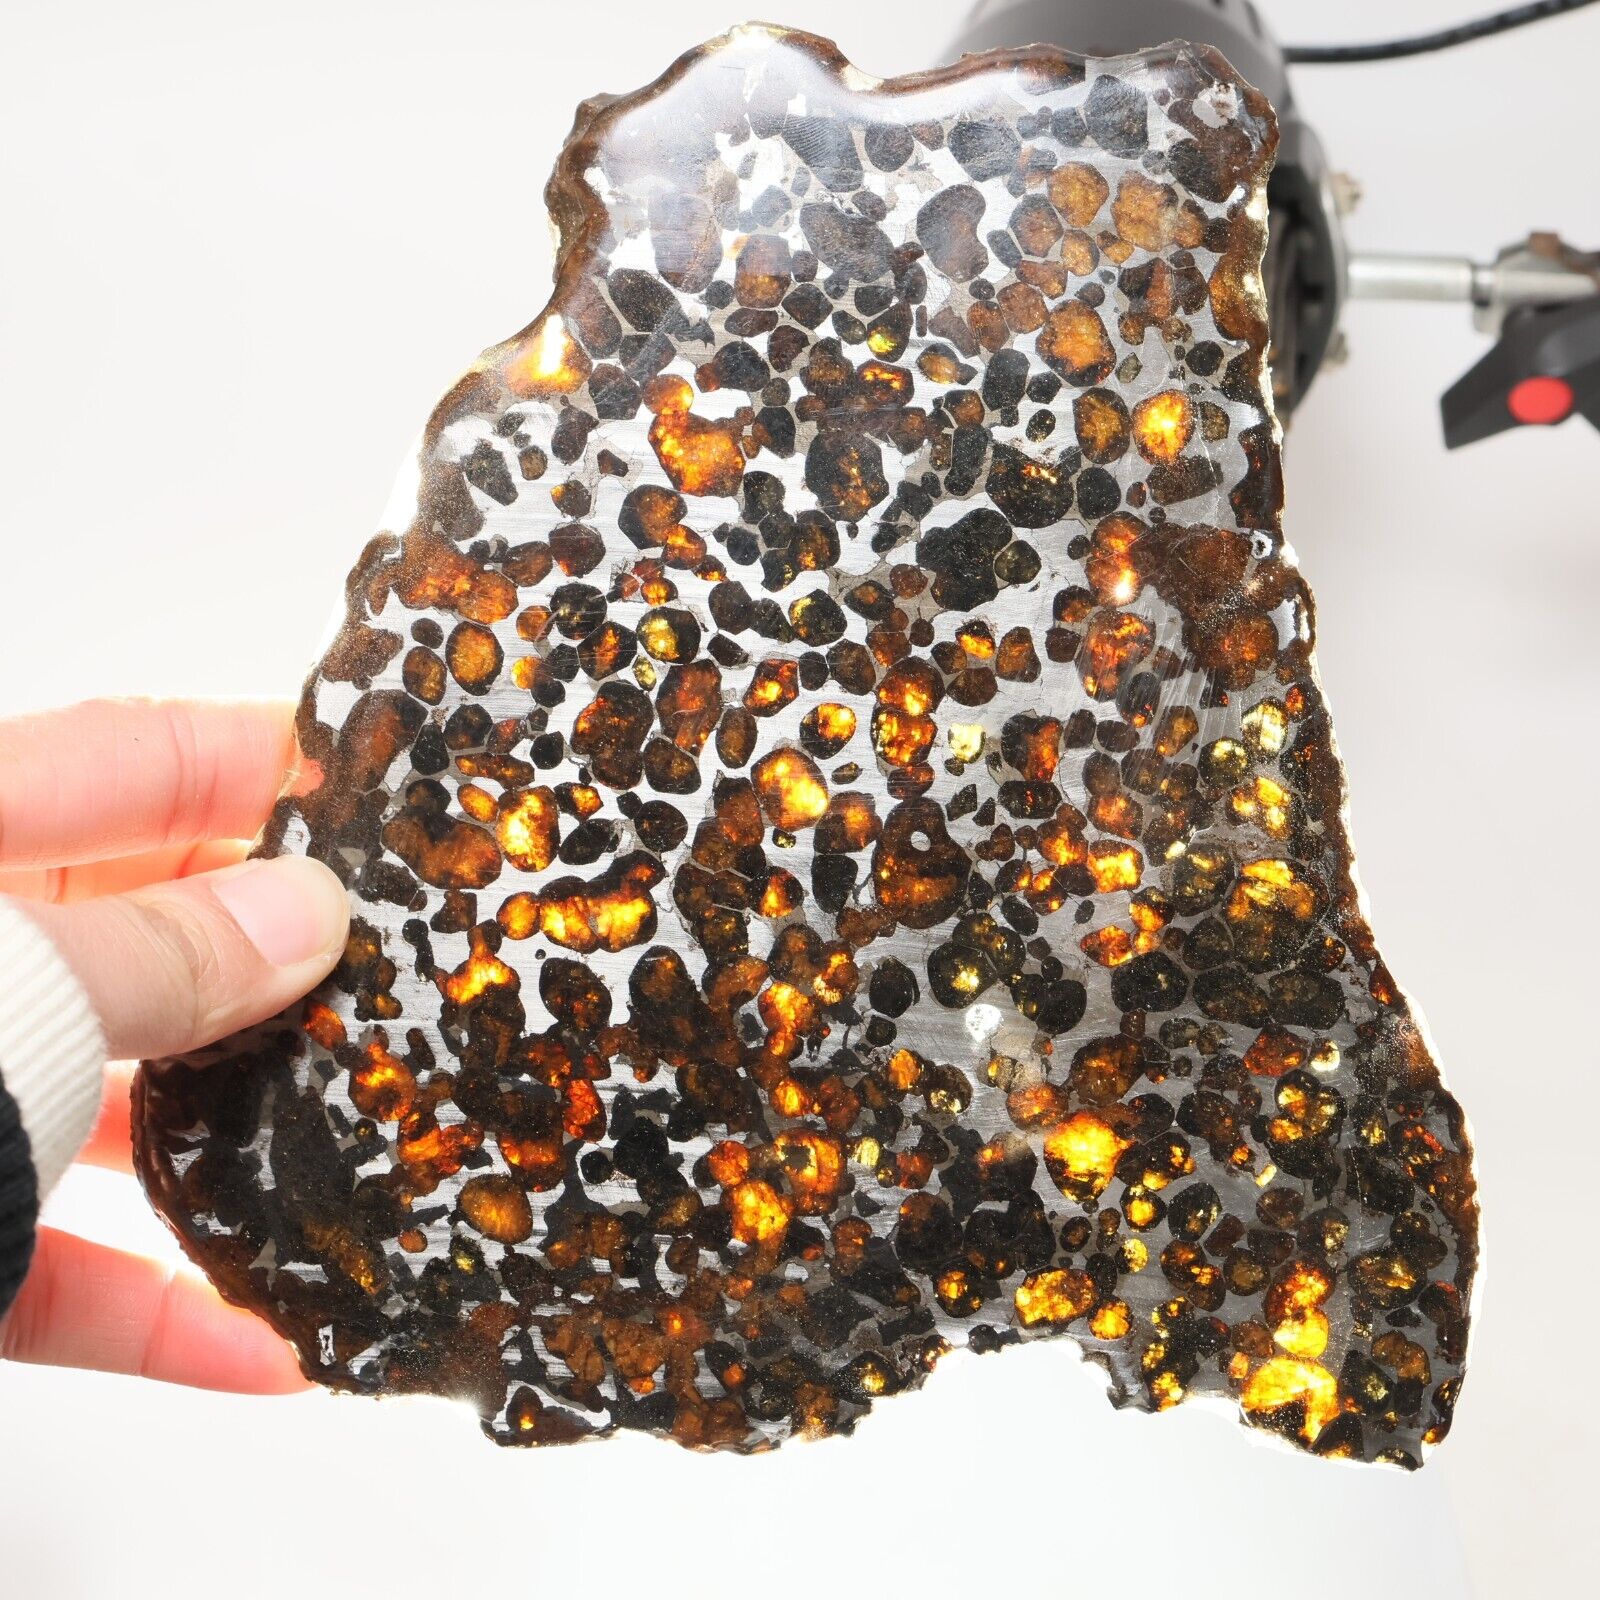 222g Beautiful SERICHO pallasite Meteorite slice - from Kenya C6994